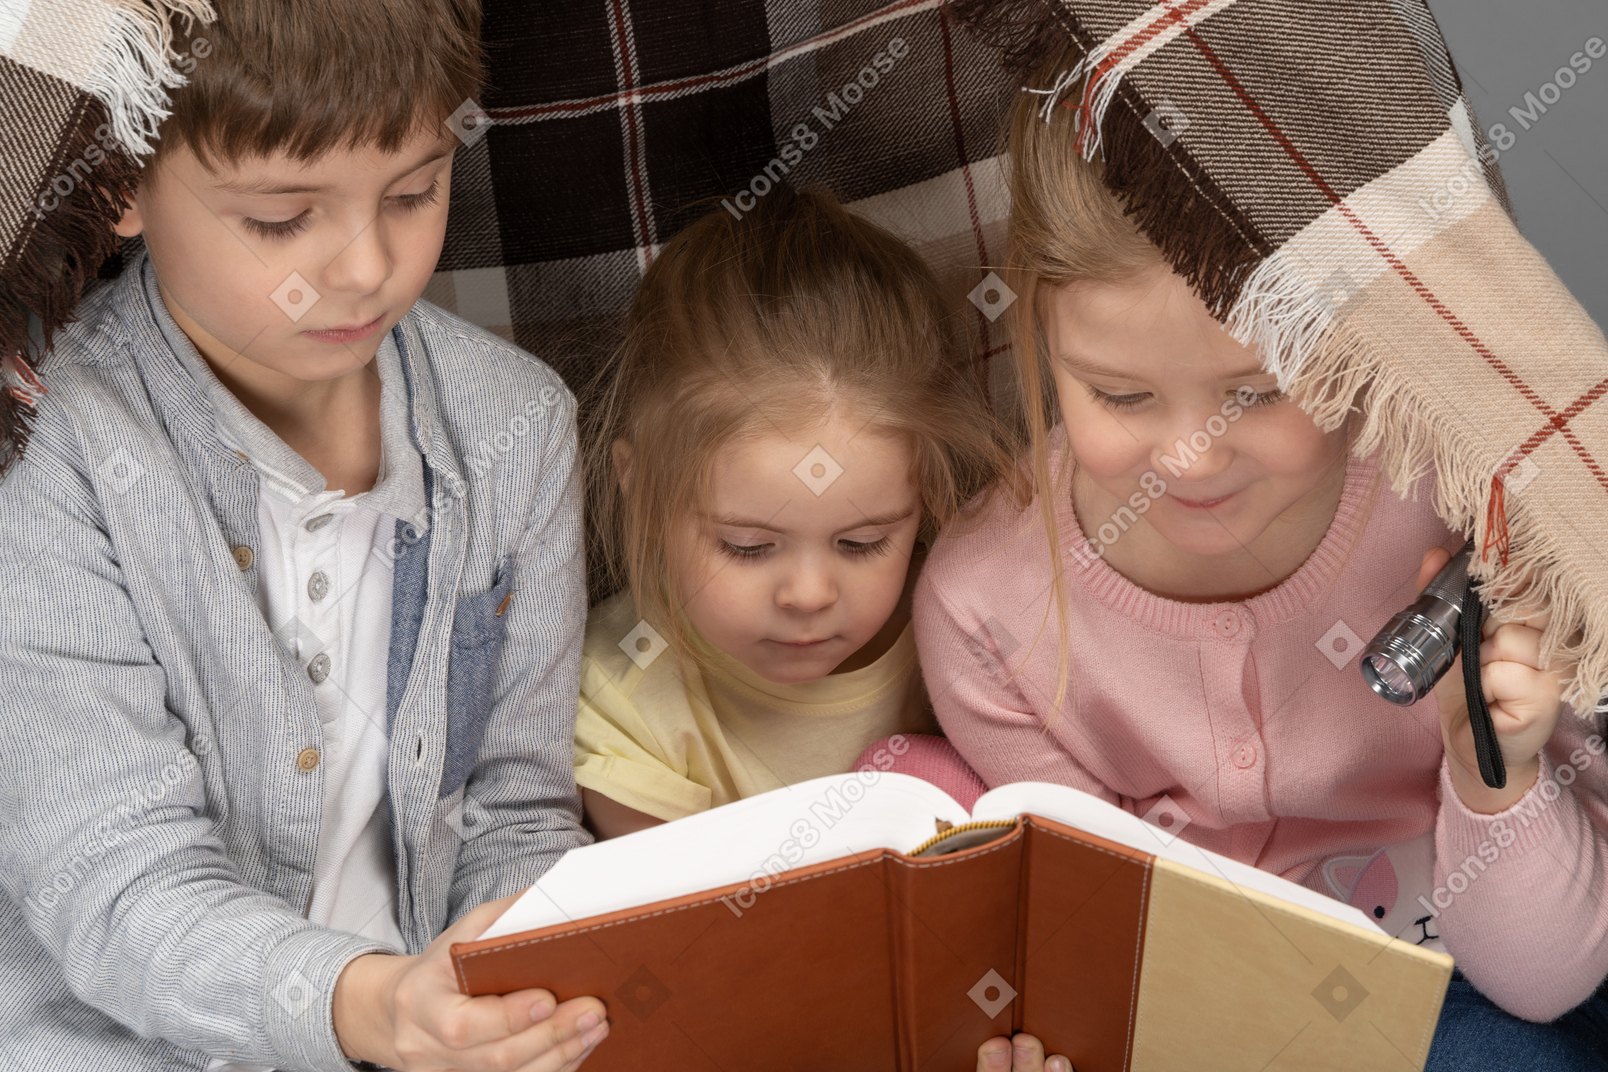 Kids reading a book in a hut